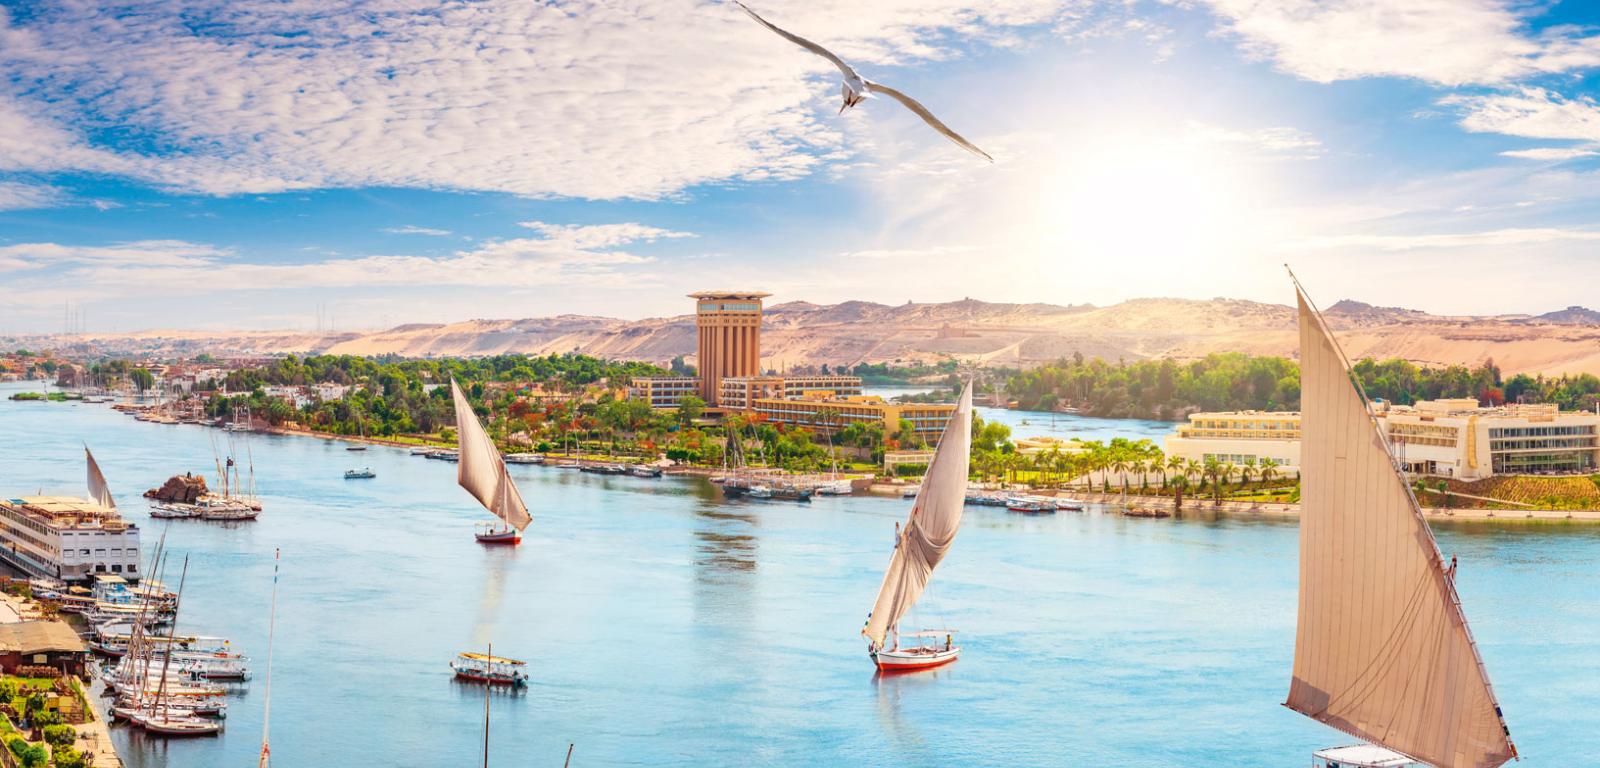 Łodzie żaglowe pływające po Nilu w pobliżu miasta Asuan w Egipcie.